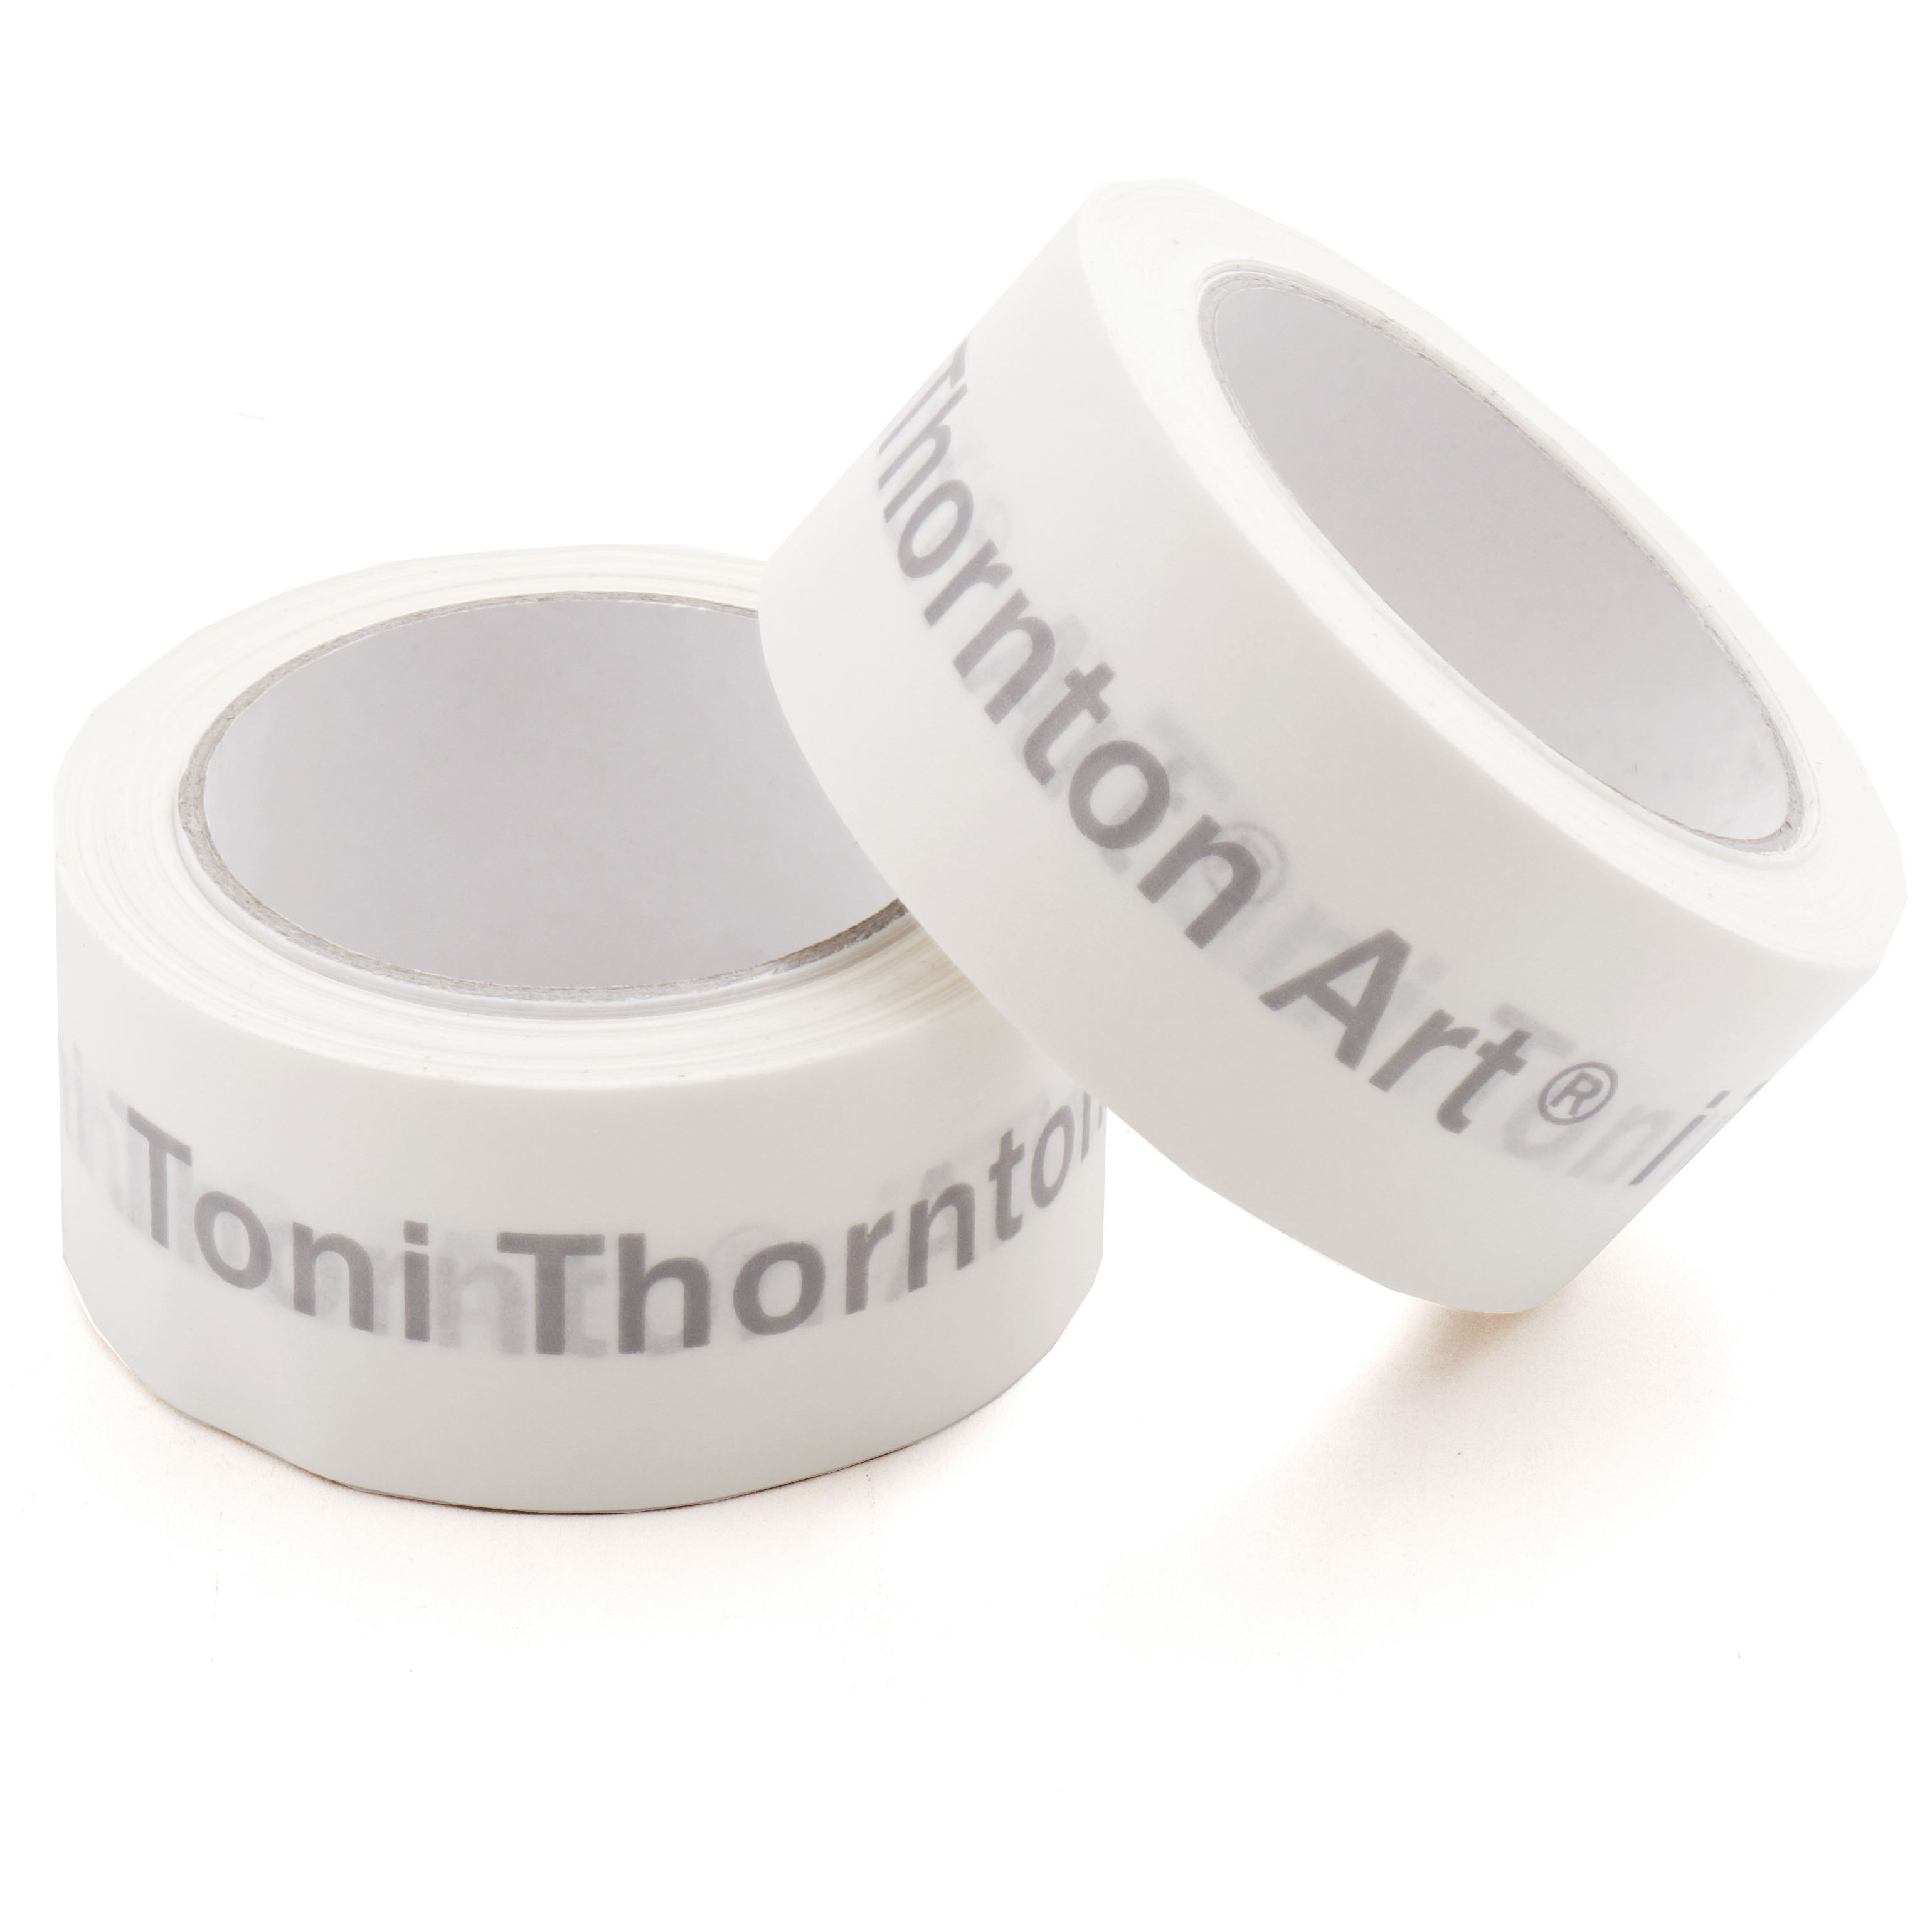 ToniThornton